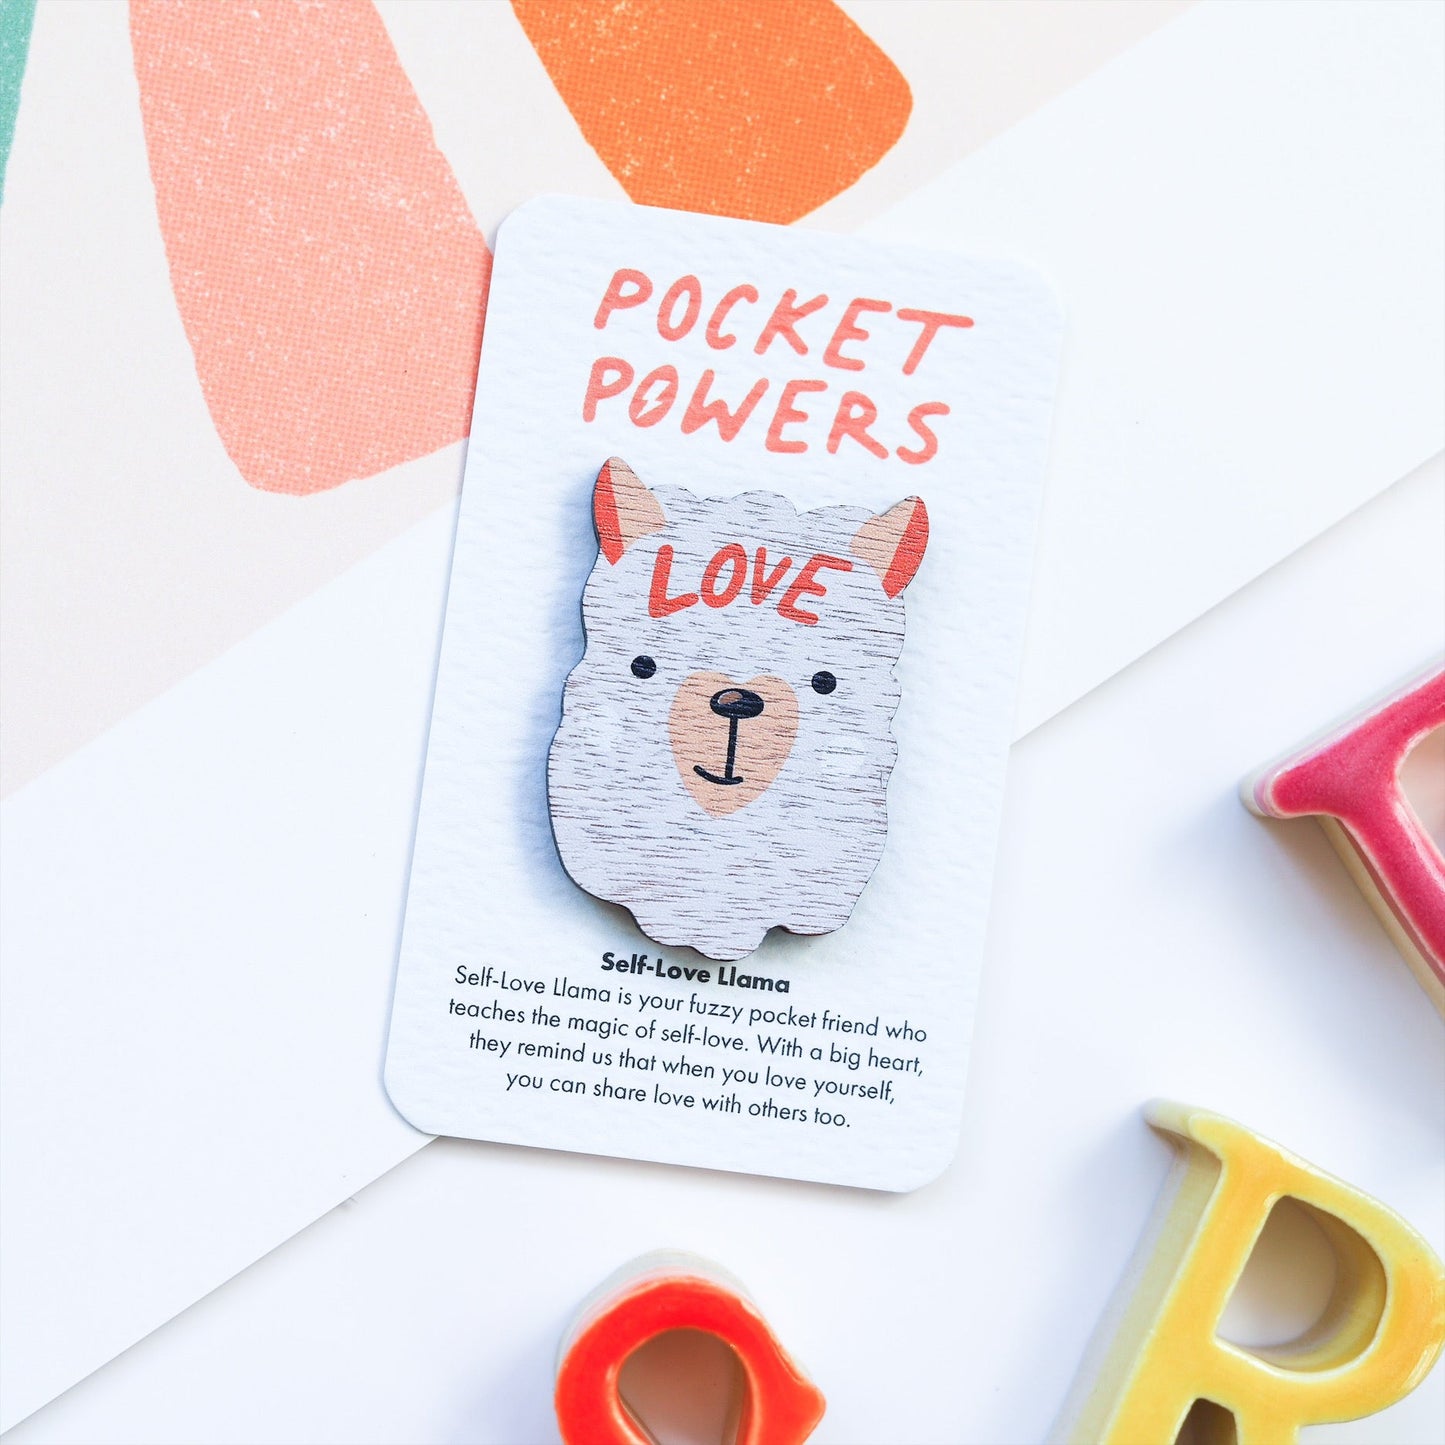 Pocket Powers - Self-Love Llama